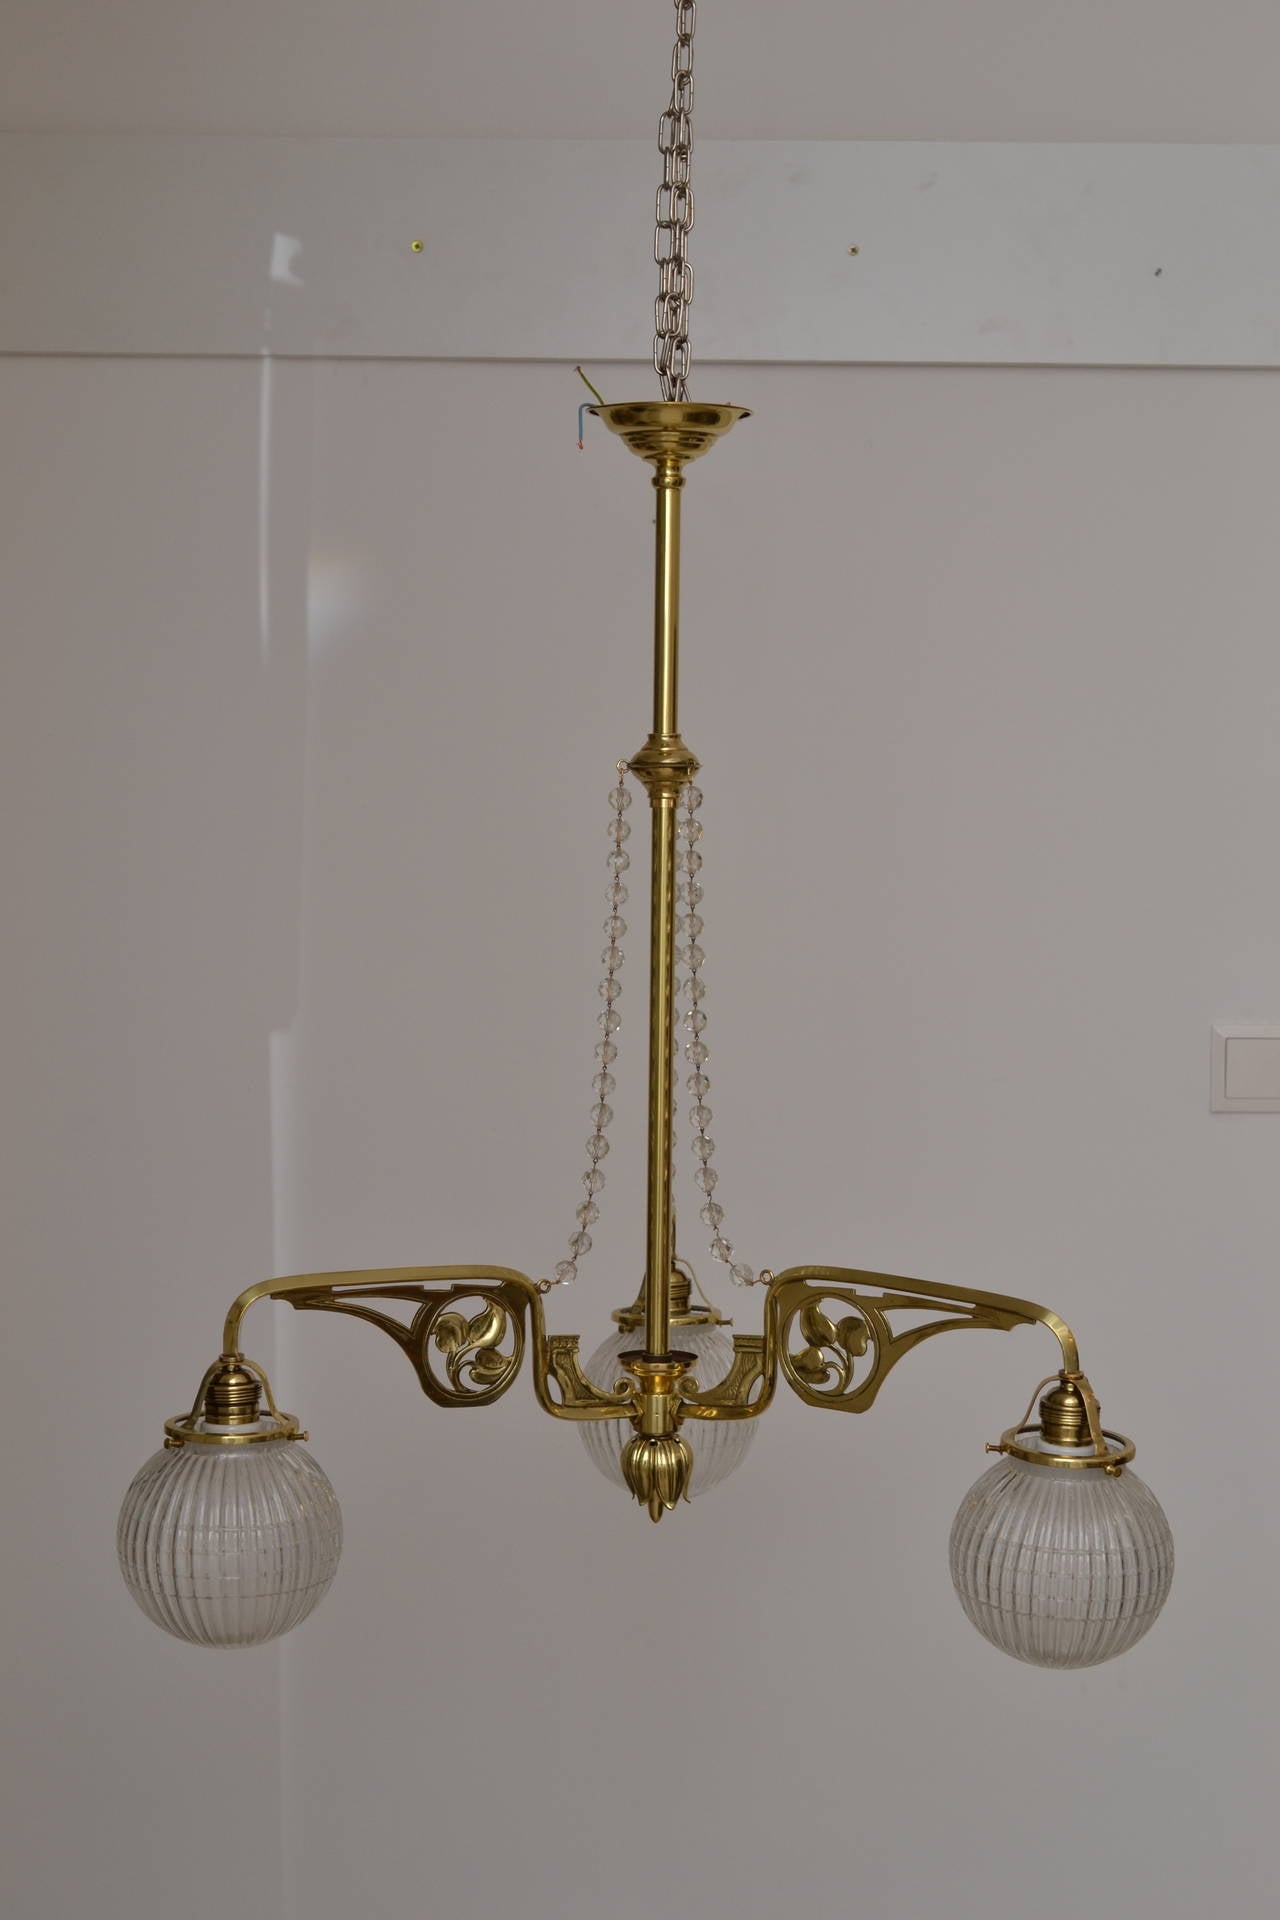 Jugendstil chandelier with original glass balls
Polished and stove enamelled